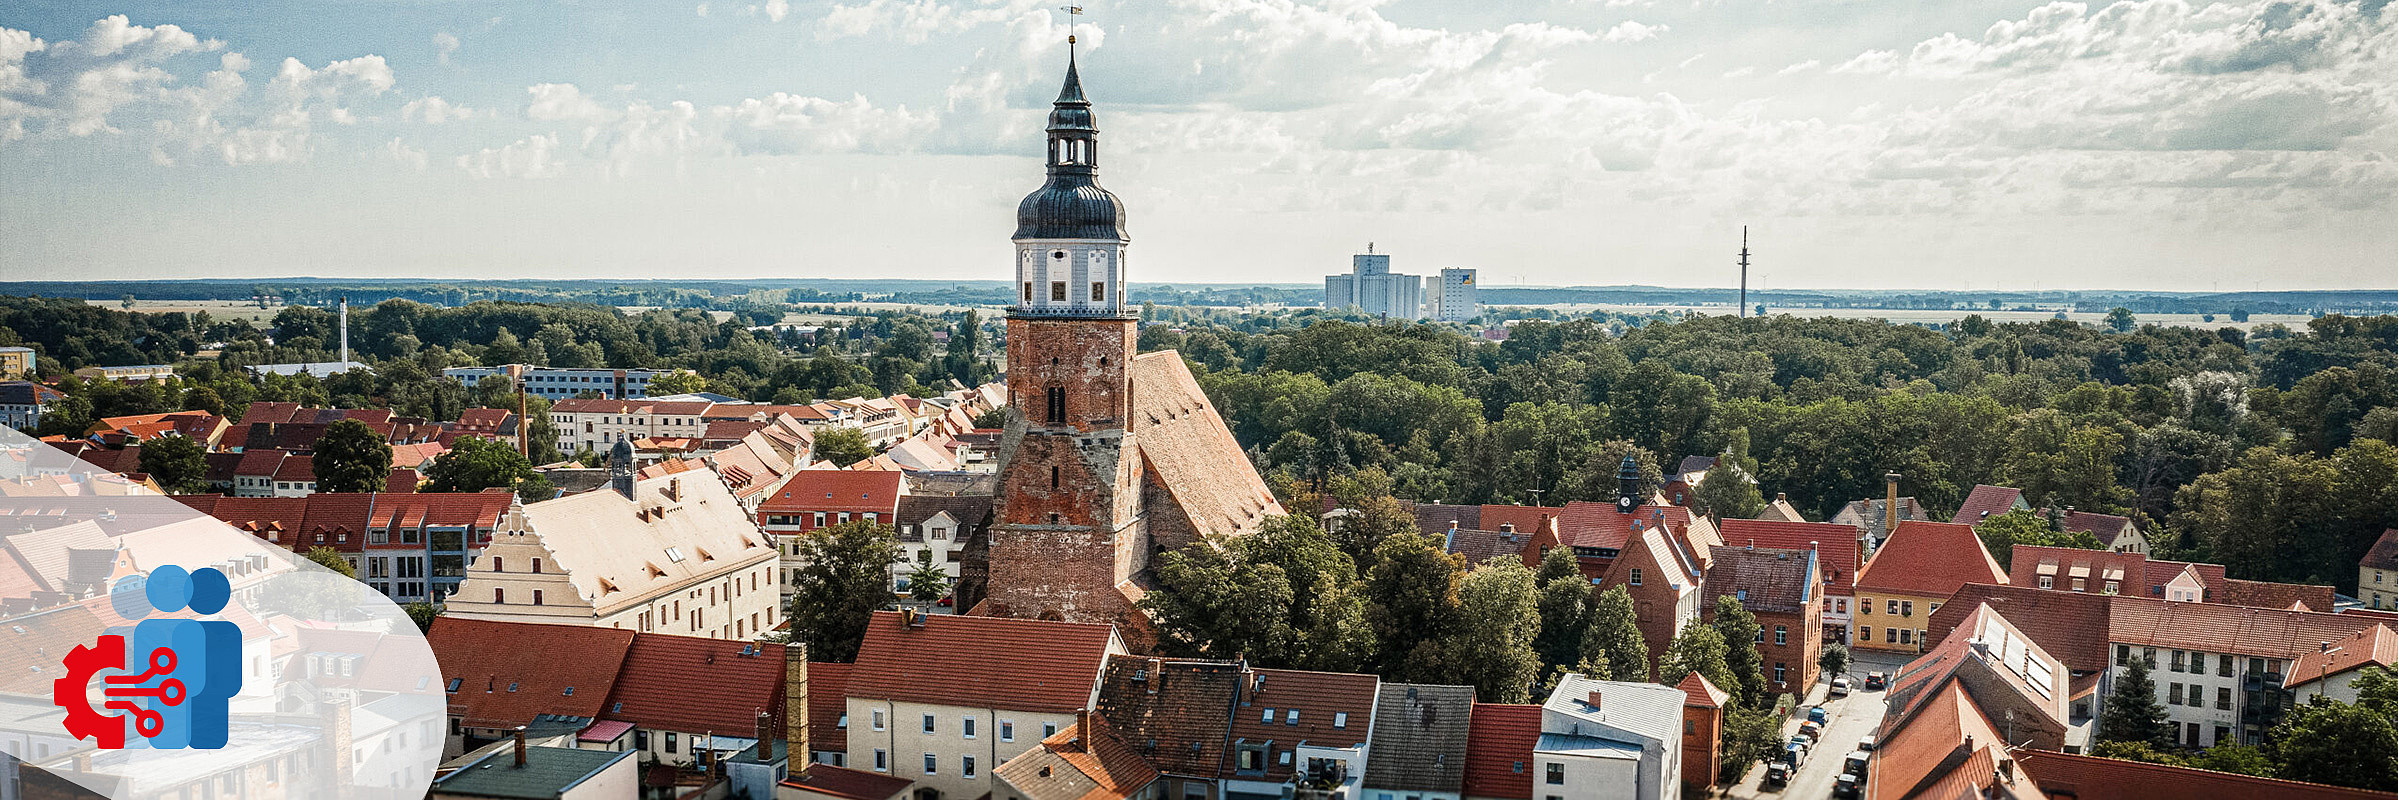 Luftaufnahme von Herzberg in der Lausitz, im Zentrum der Kirchturm